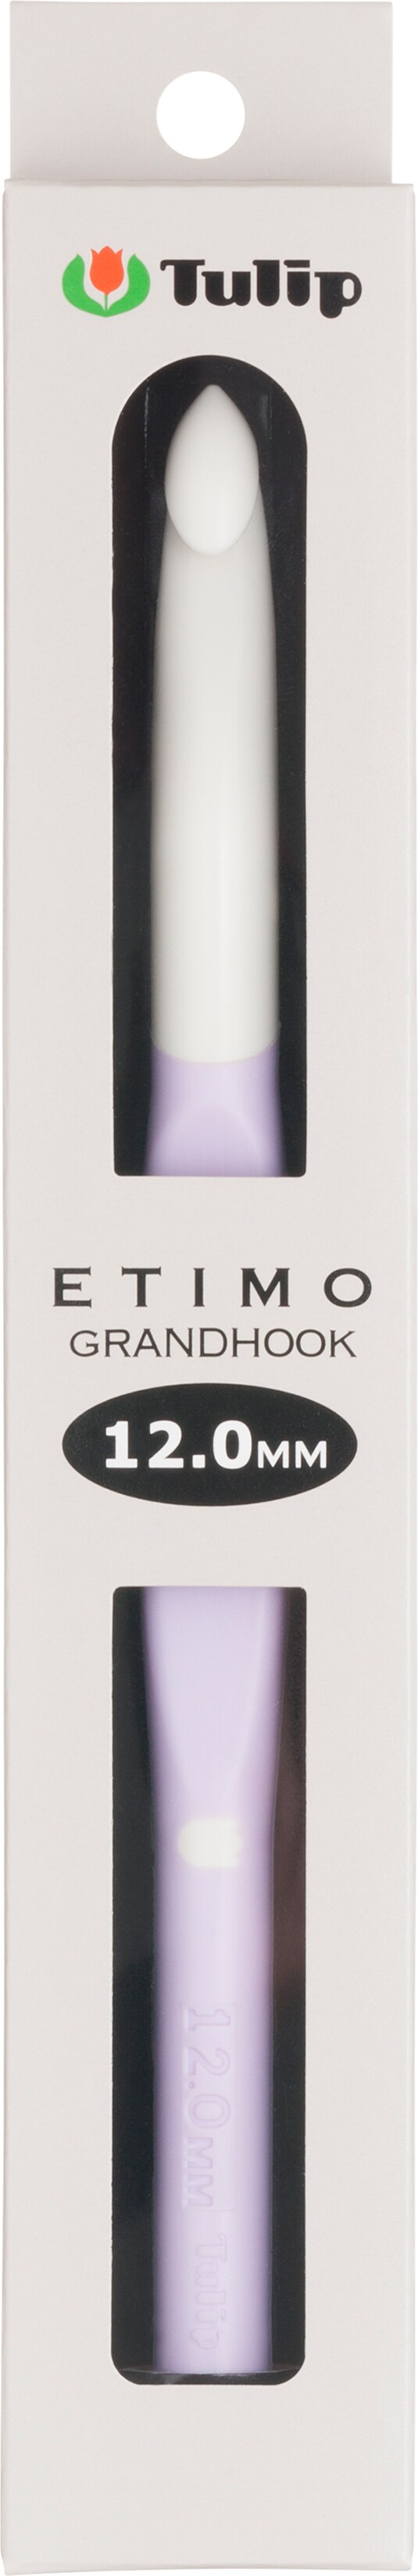 Etimo Grandhook  12mm — Loom + Spindle